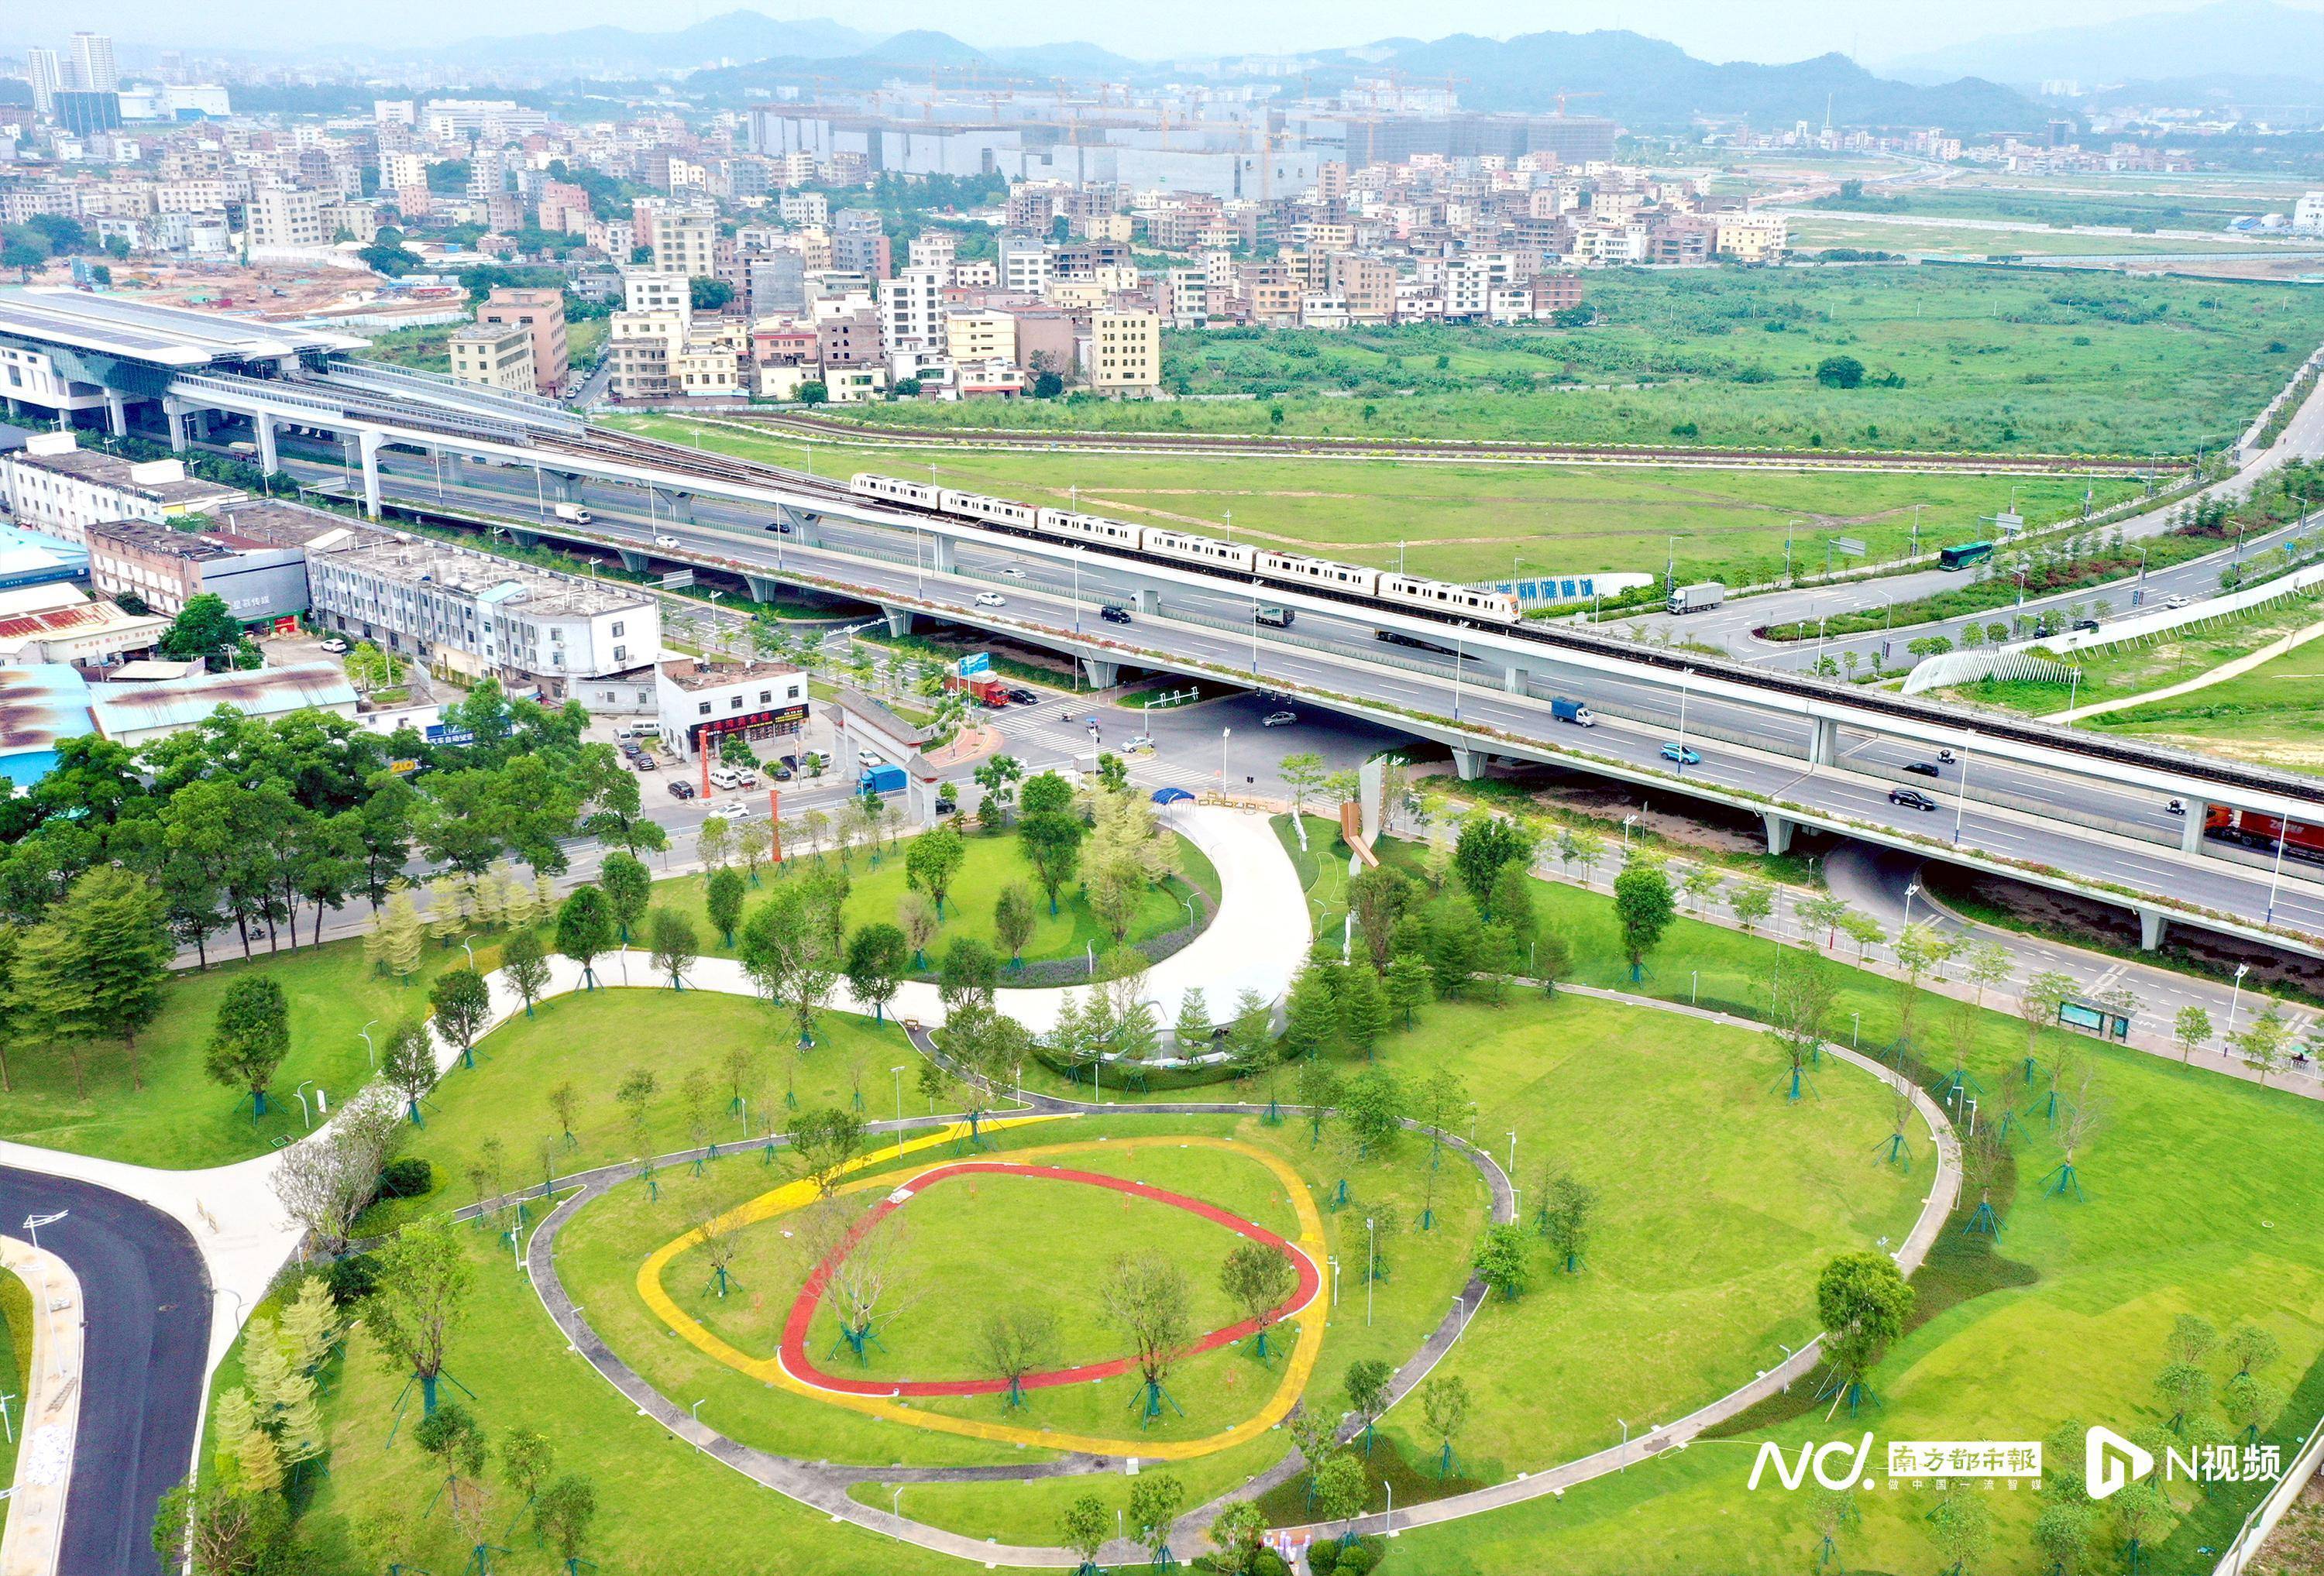 广州首个飞盘公园9月建成启用,面积达2万多平方米